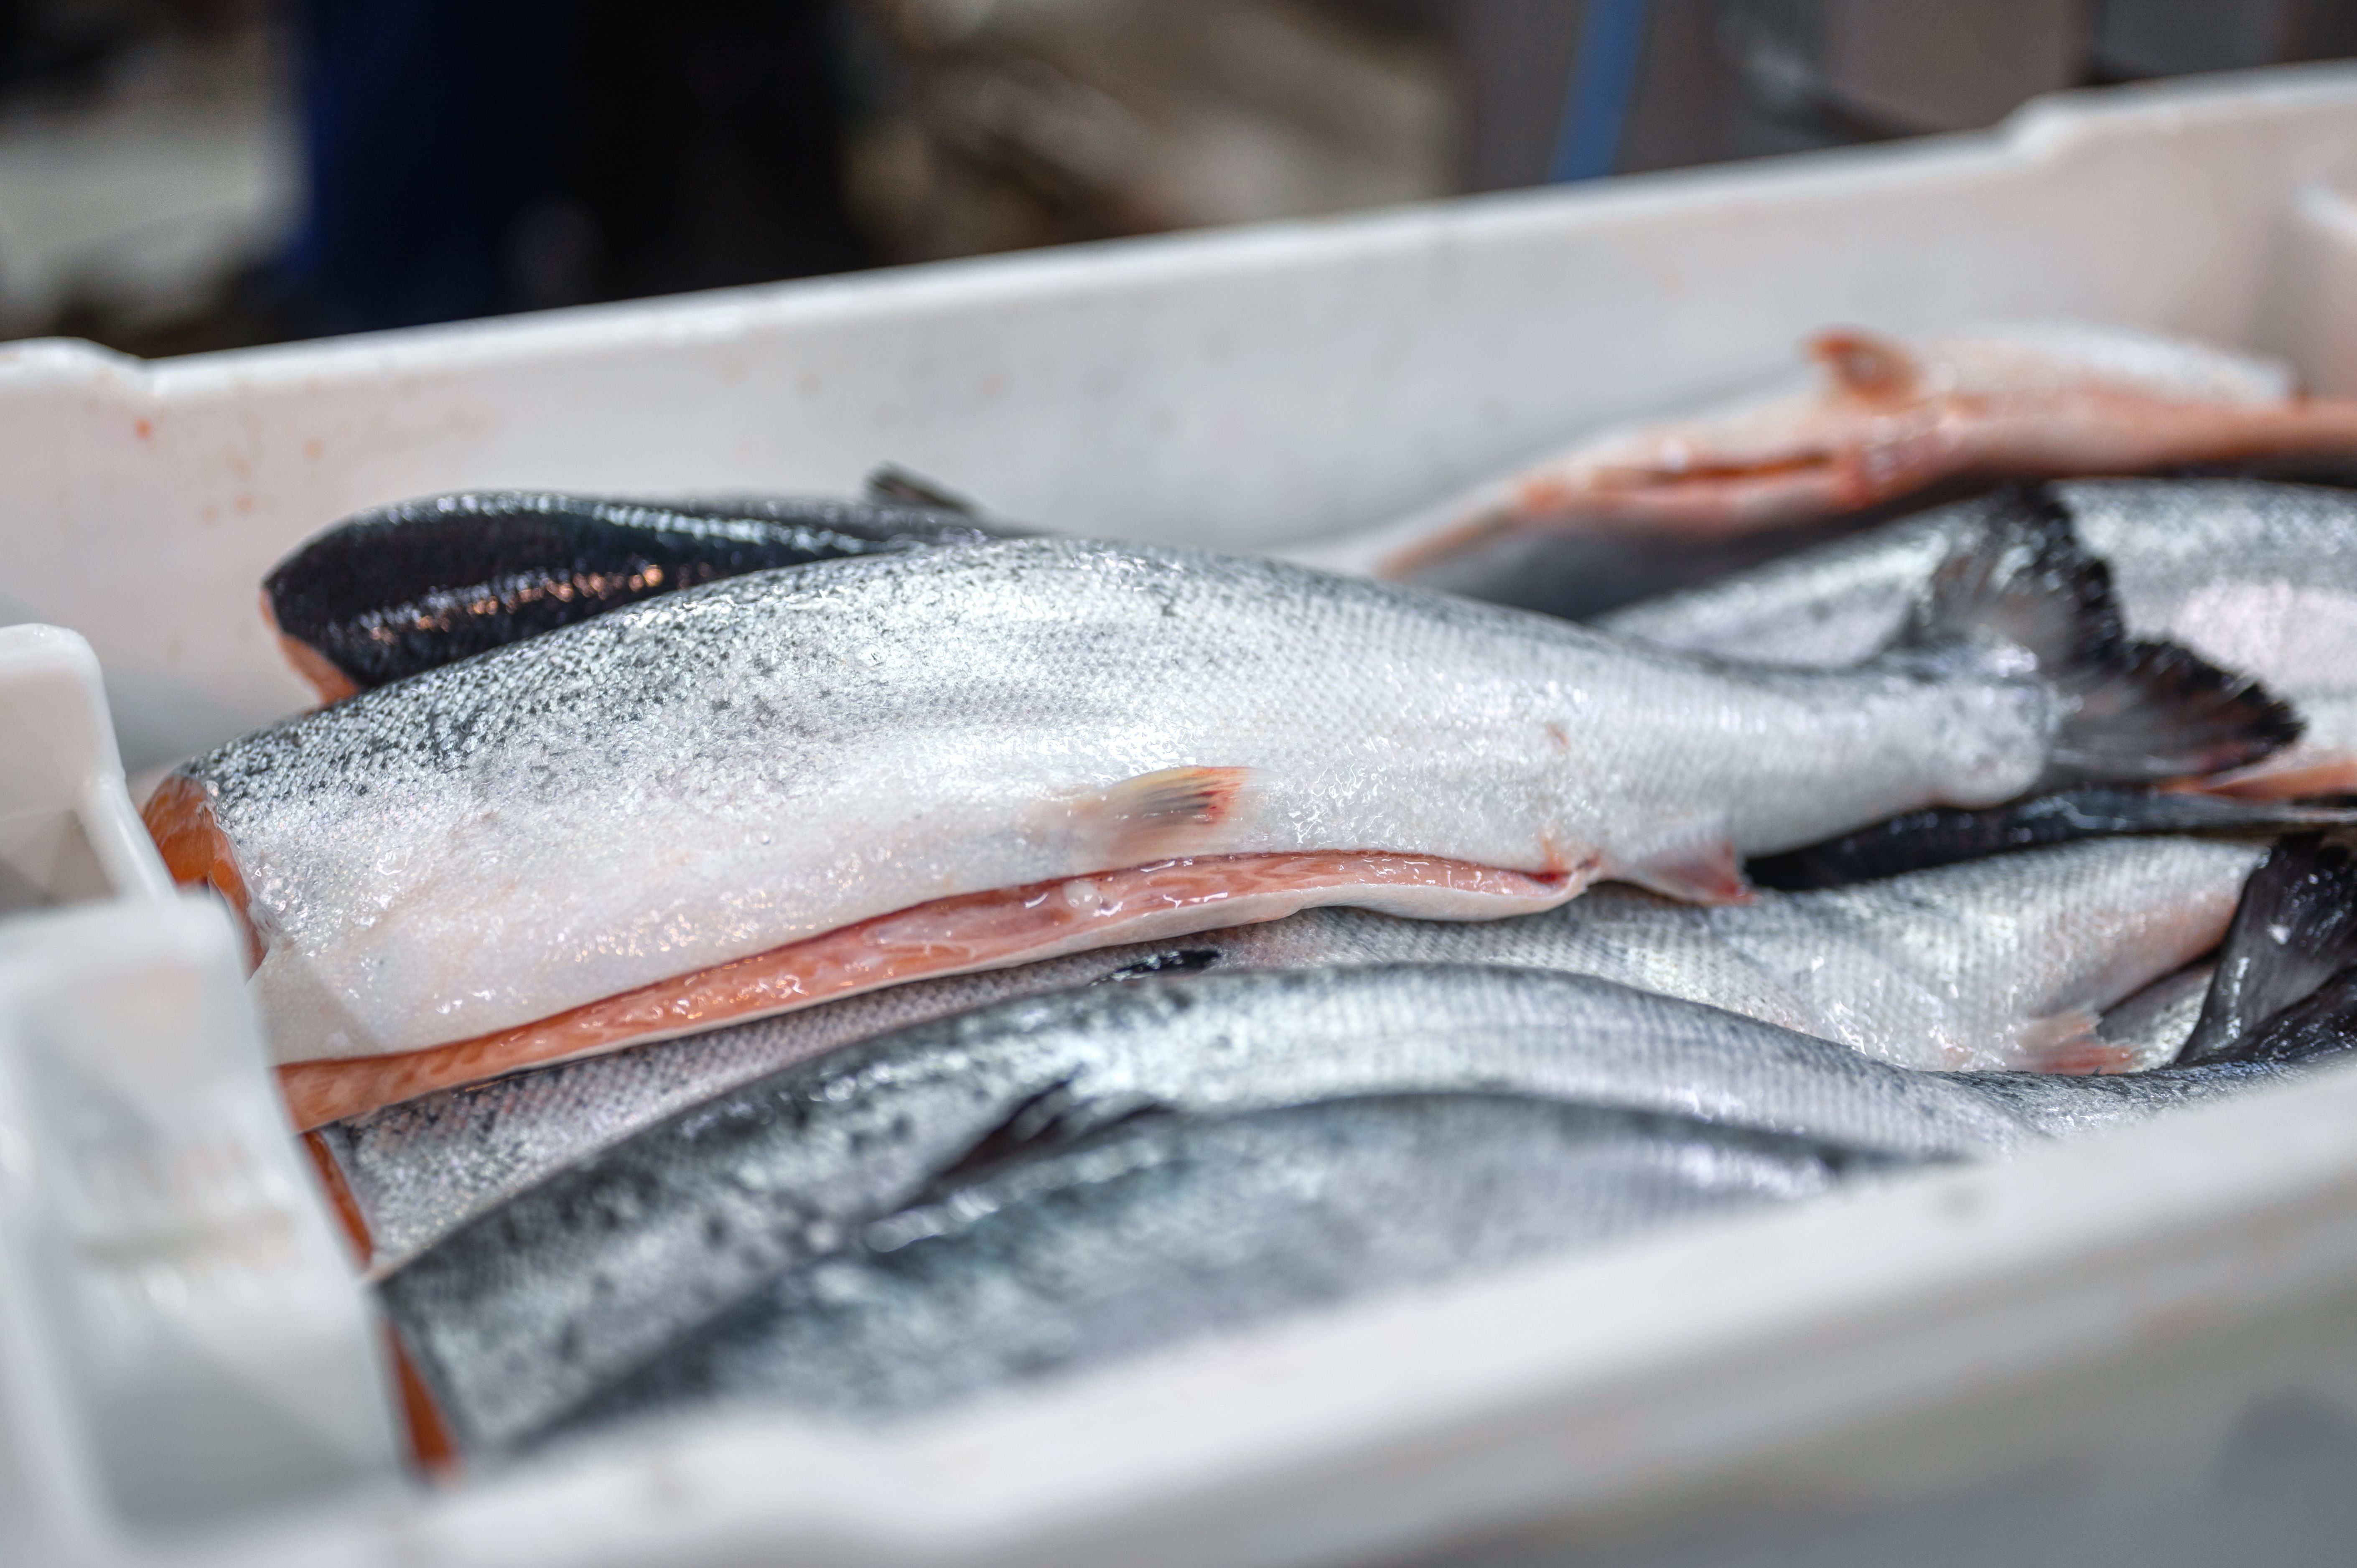 Claves para saber si el pescado está en mal estado y cómo evitarlo. Foto: Bigstock